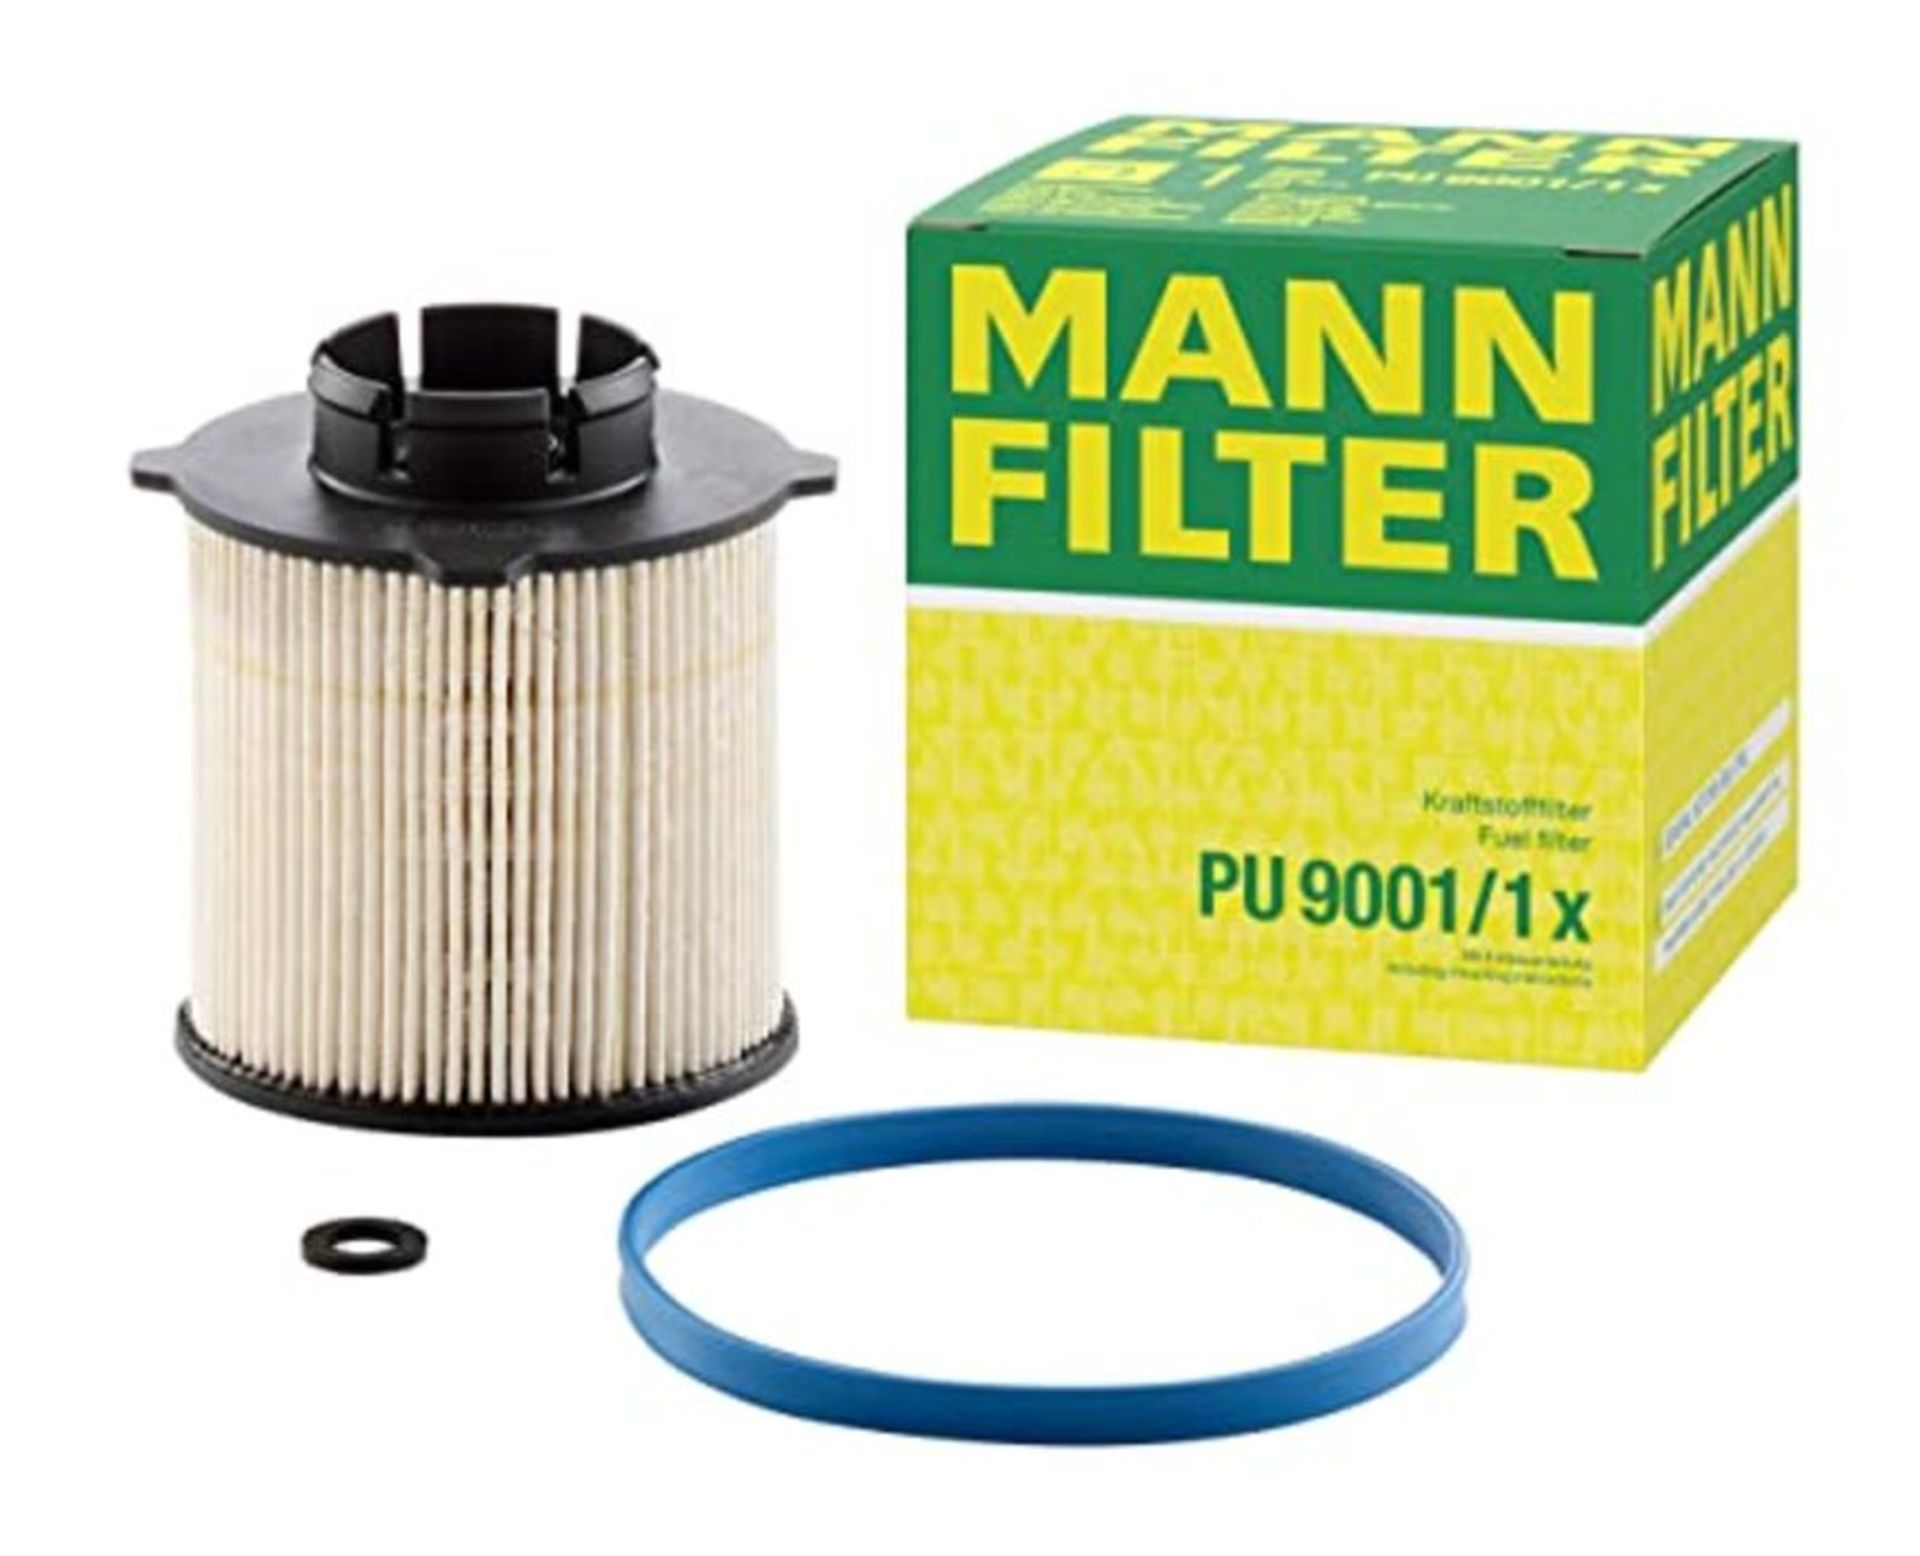 Original MANN-FILTER Fuel filter PU 9001 X  Fuel filter set with gasket / gasket se